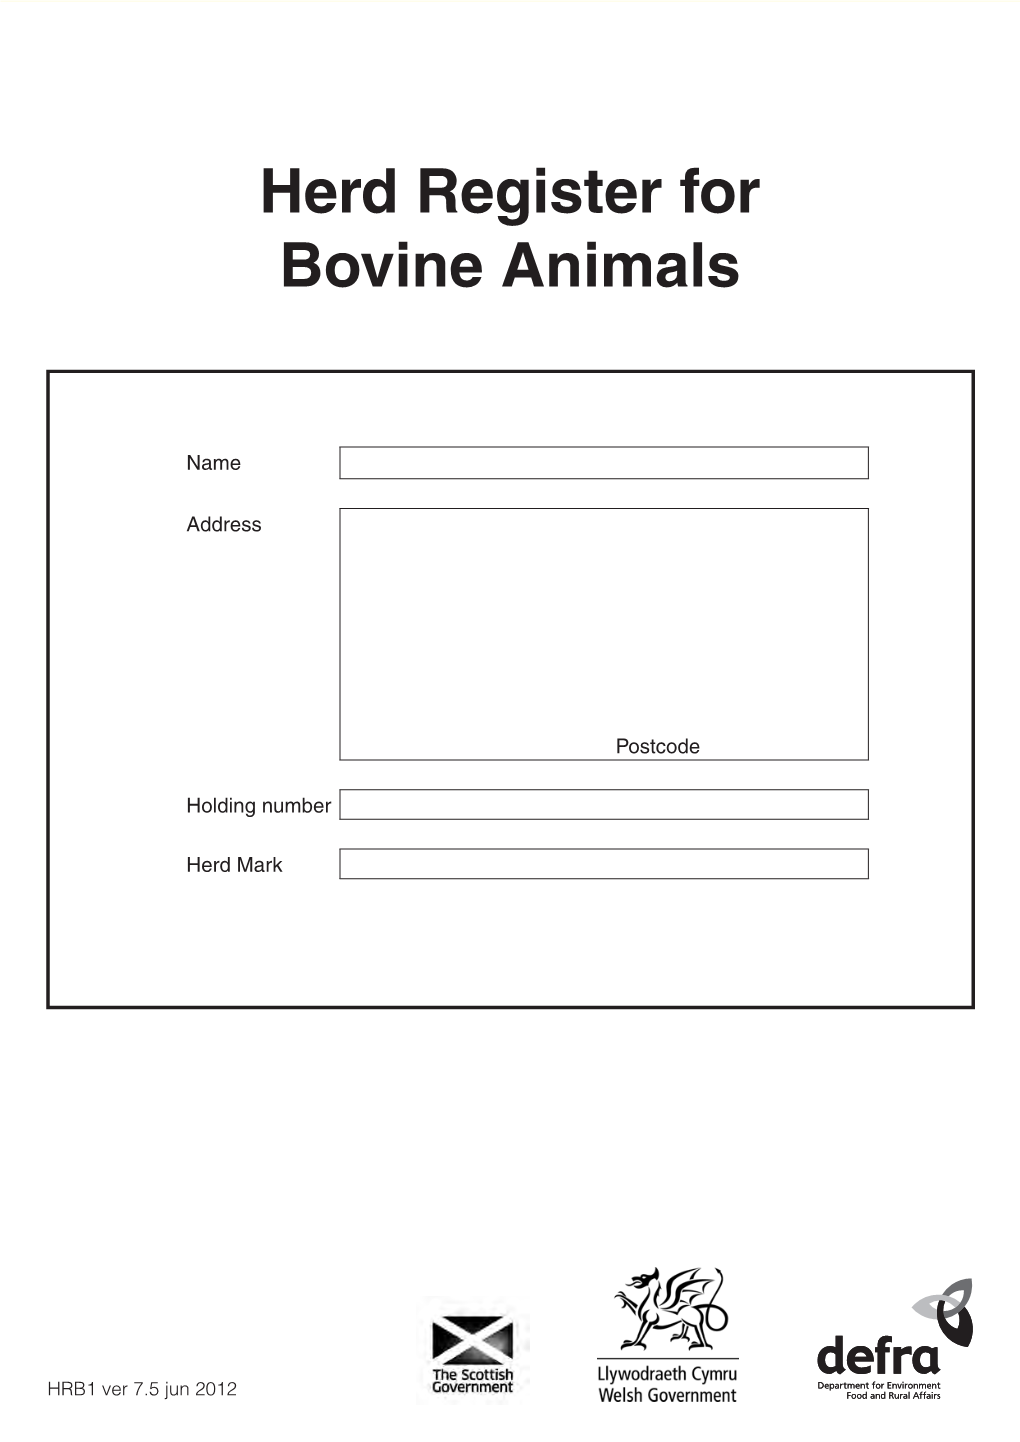 Herd Register for Bovine Animals